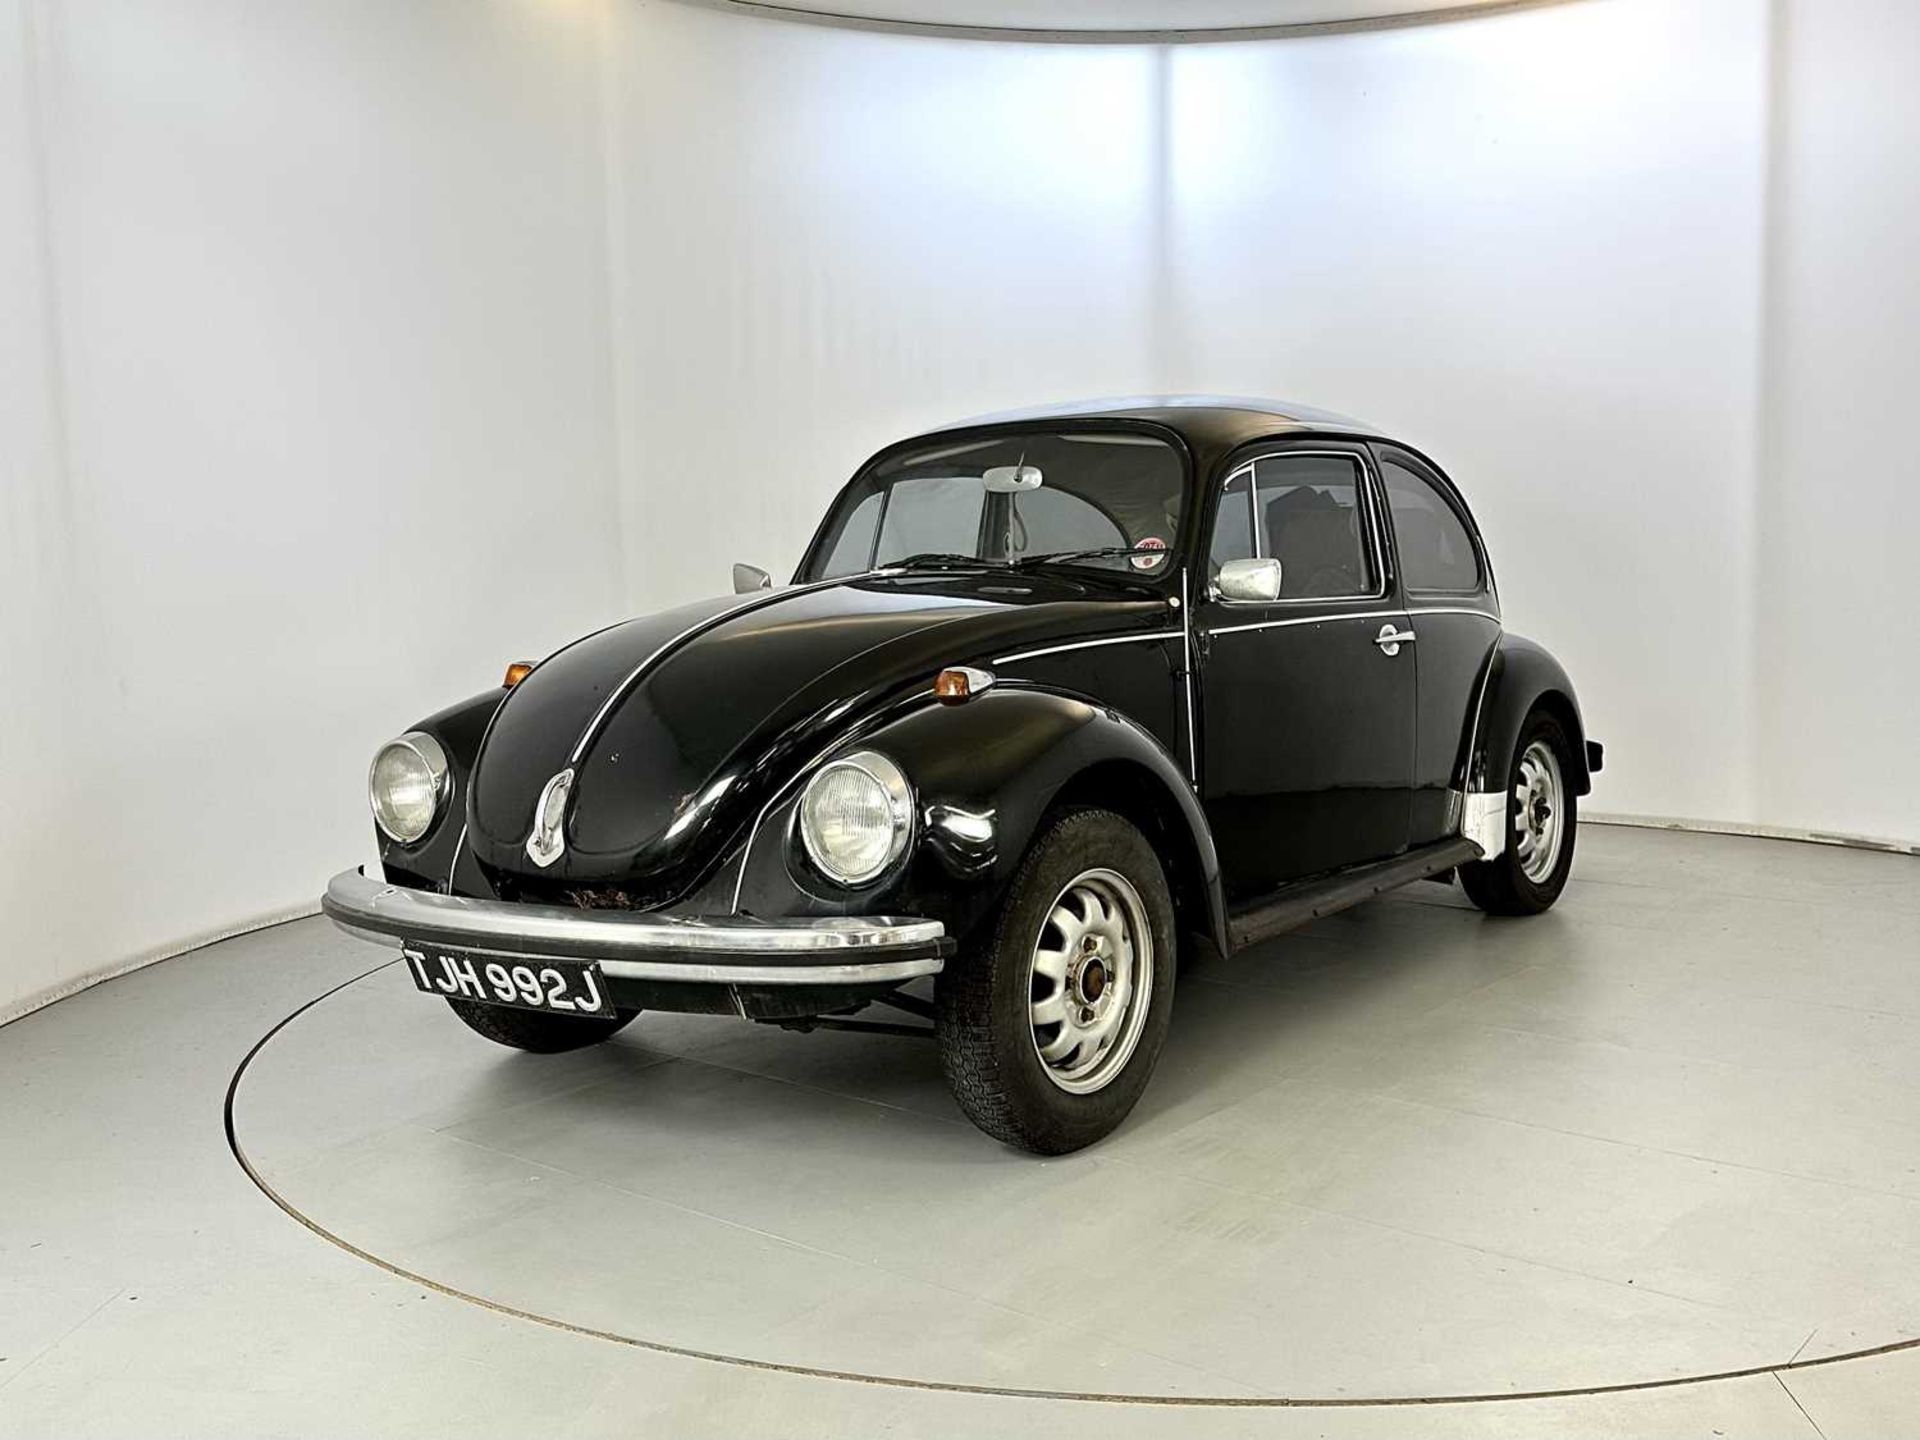 1971 Volkswagen Beetle - Image 3 of 29